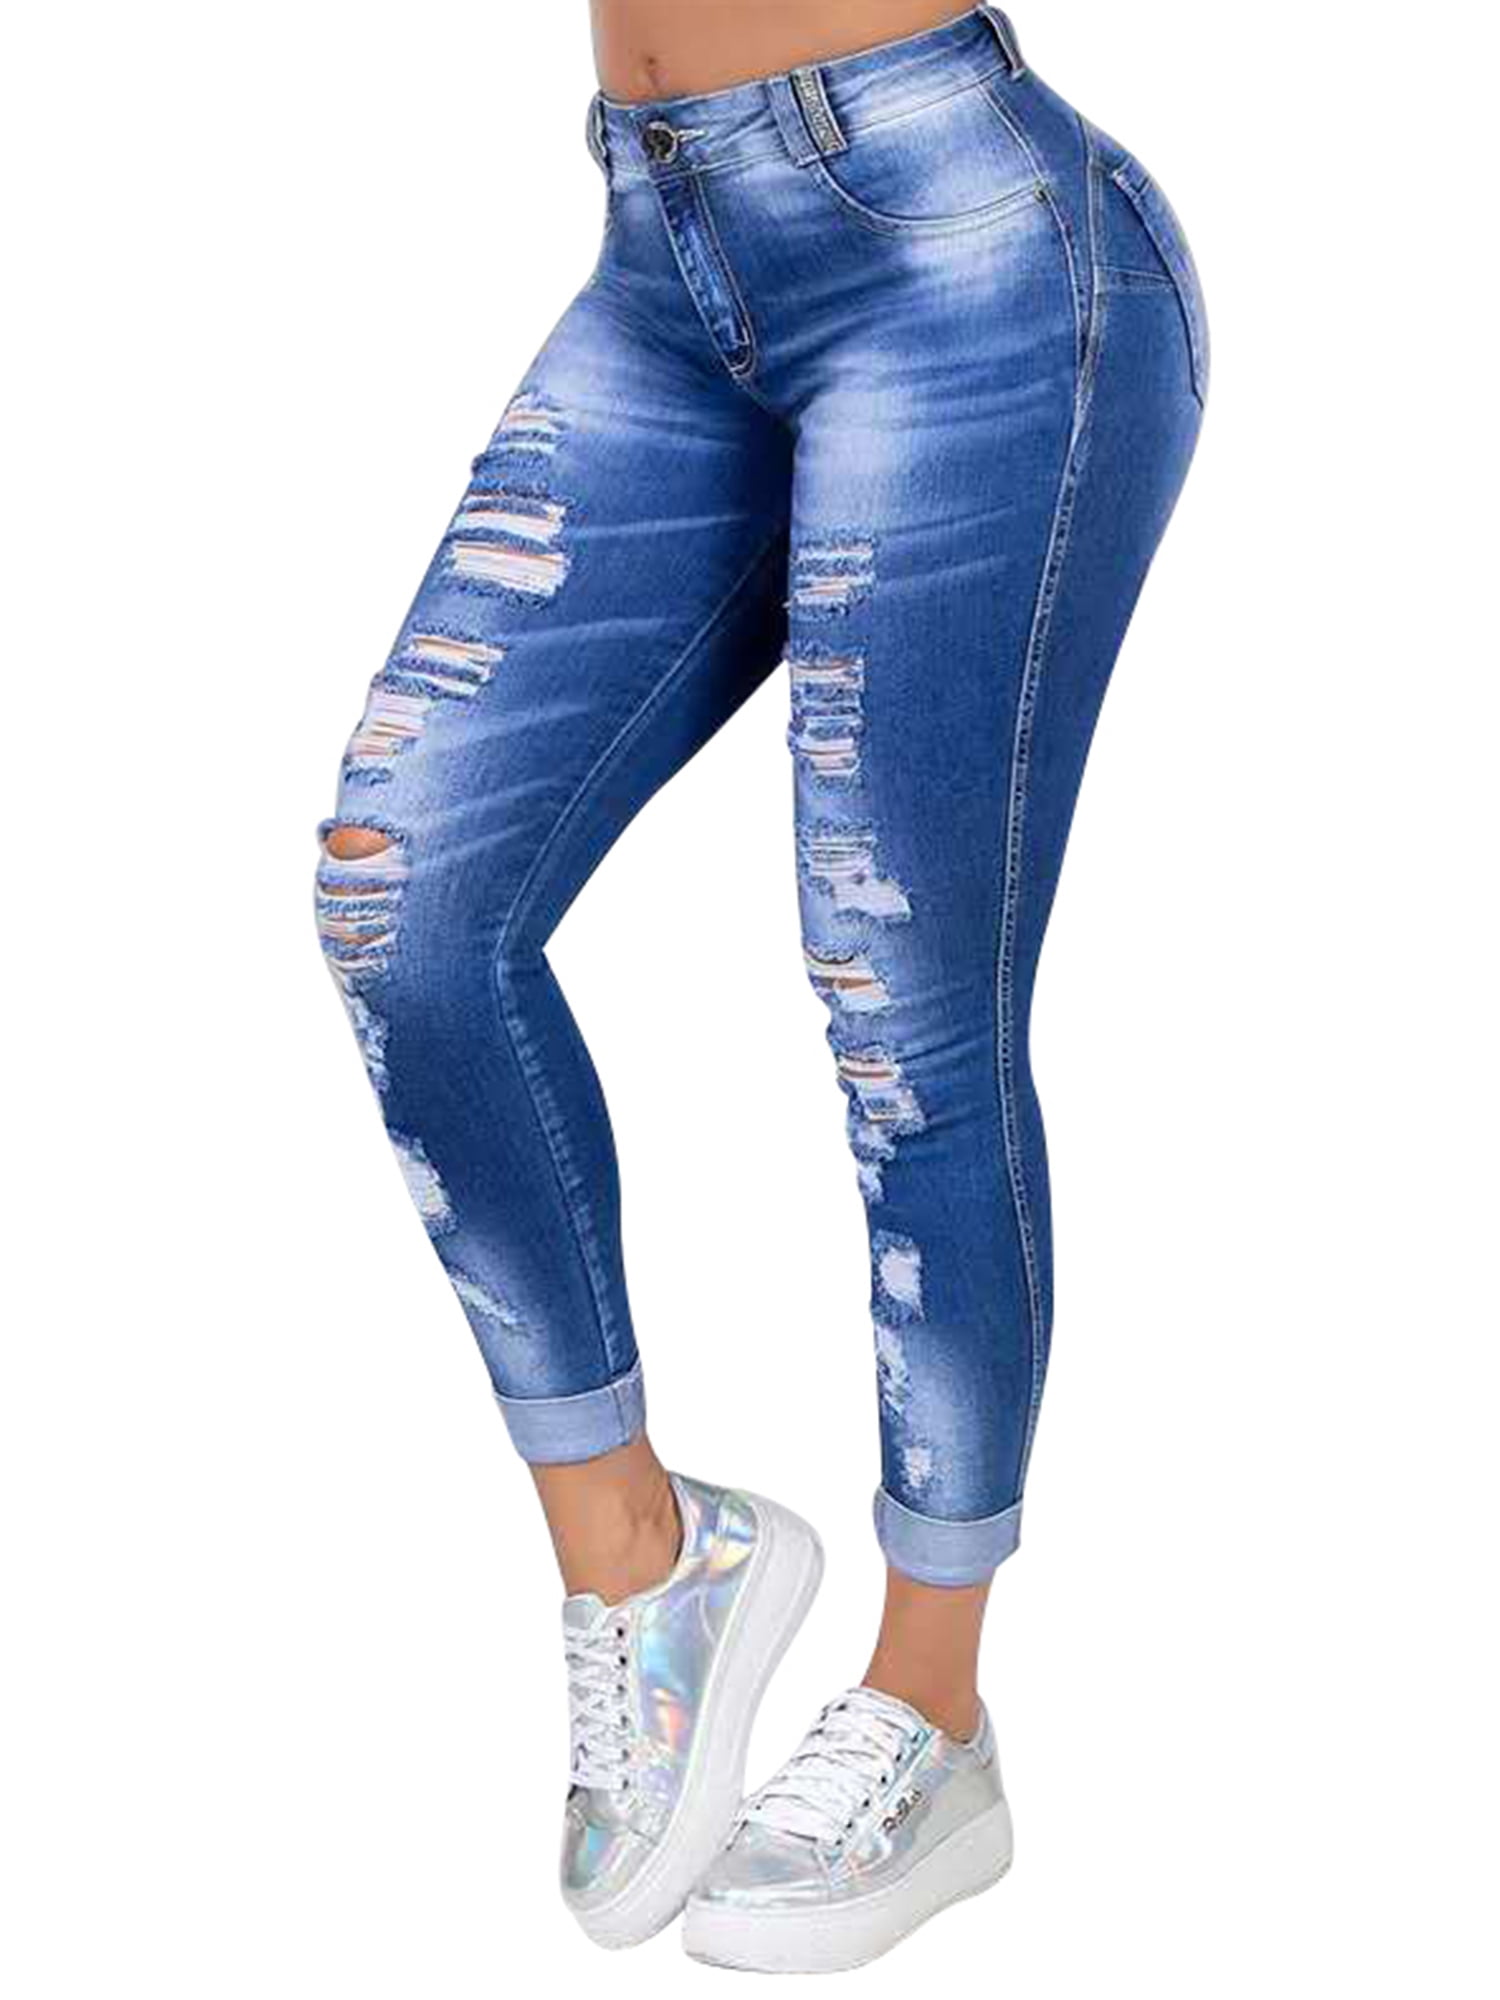 Women's Trouser Cut Jeans